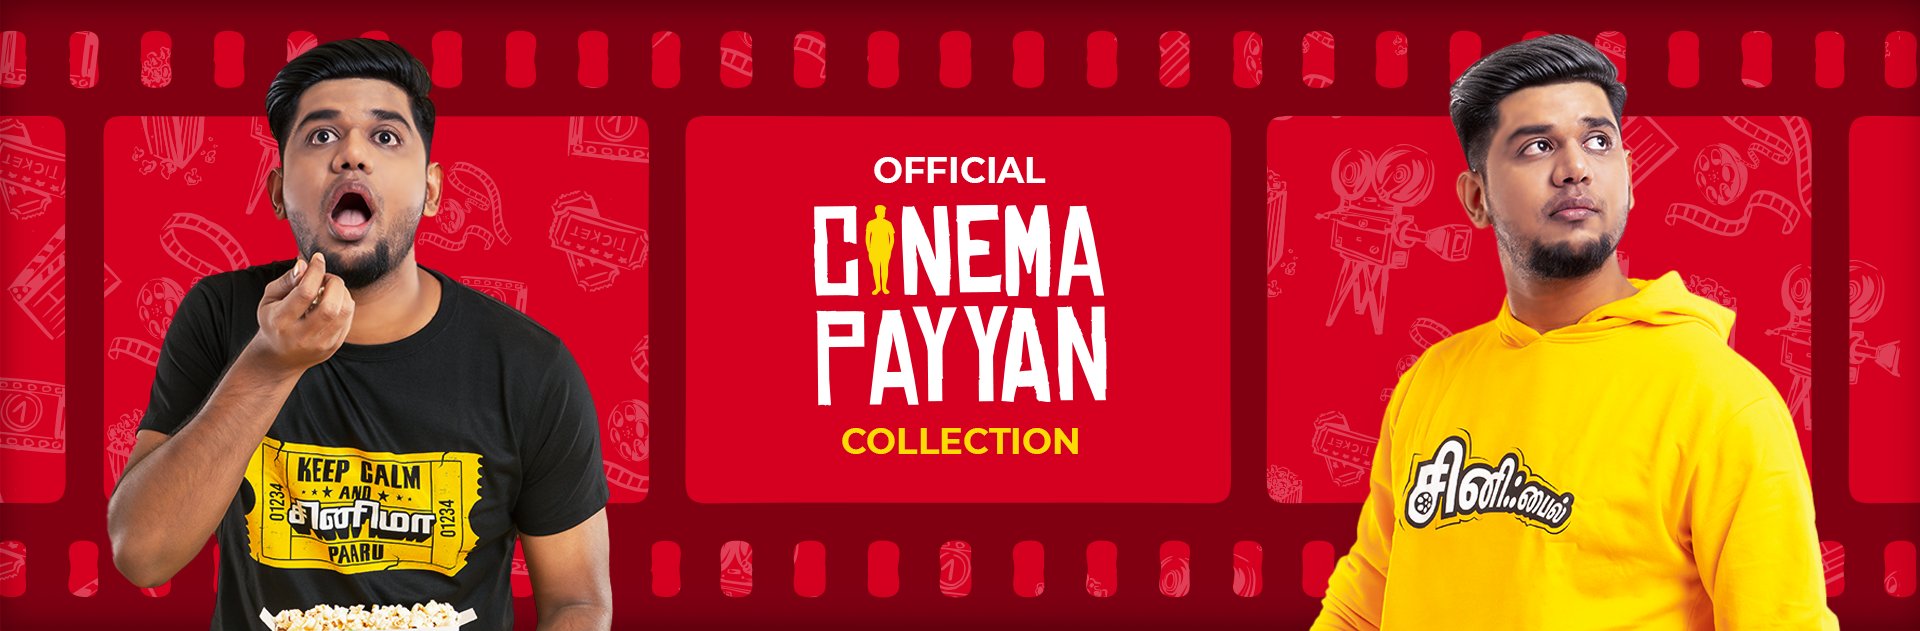 Cinema Payyan